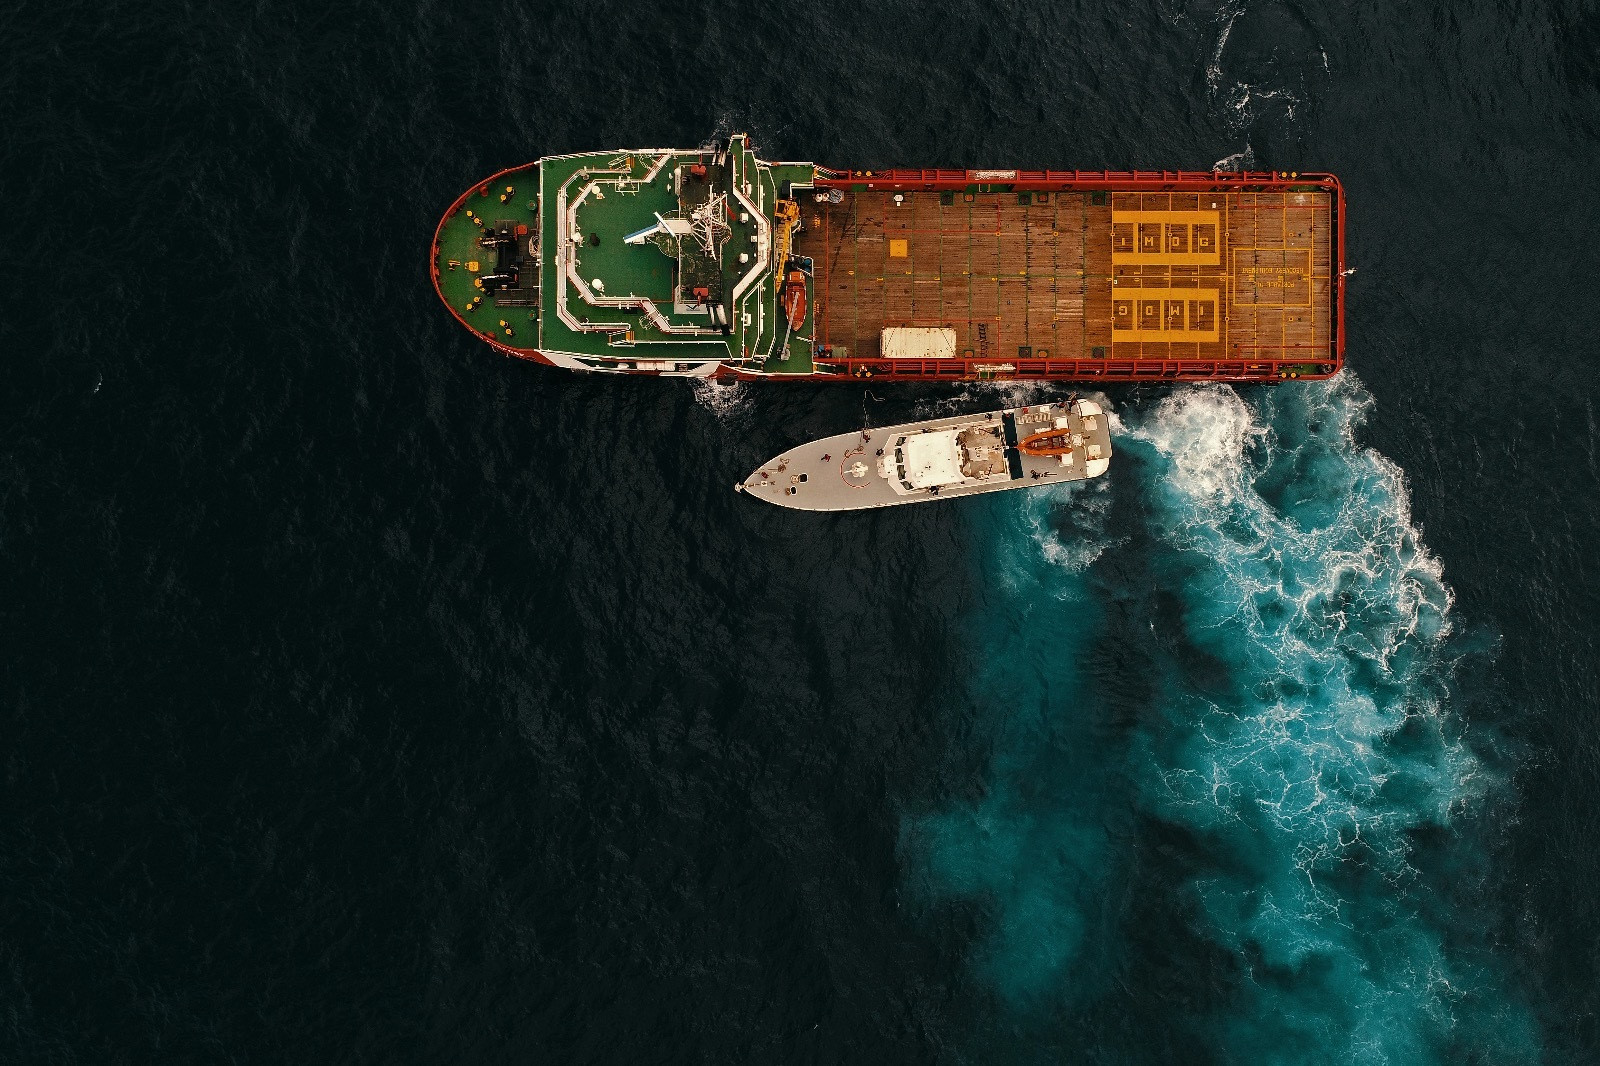 Fatih isimli sondaj gemisi Karadeniz'de 1.5 aydır arama çalışması yürütüyor.